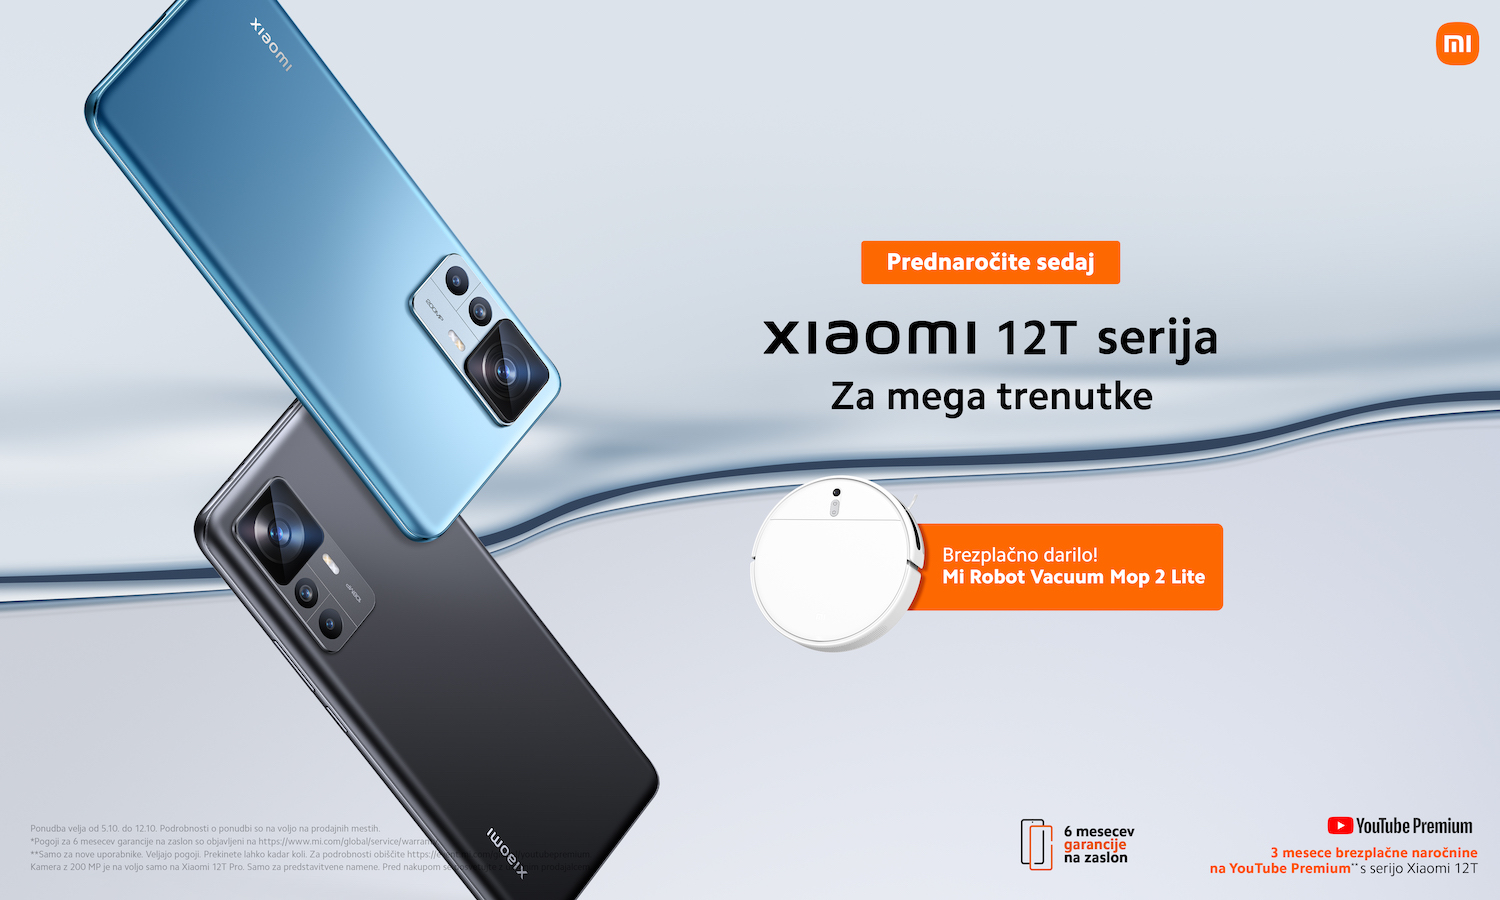 Xiaomi a lancé la nouvelle série Xiaomi 12T avec un appareil photo 200 MP et de nouveaux produits AIoT